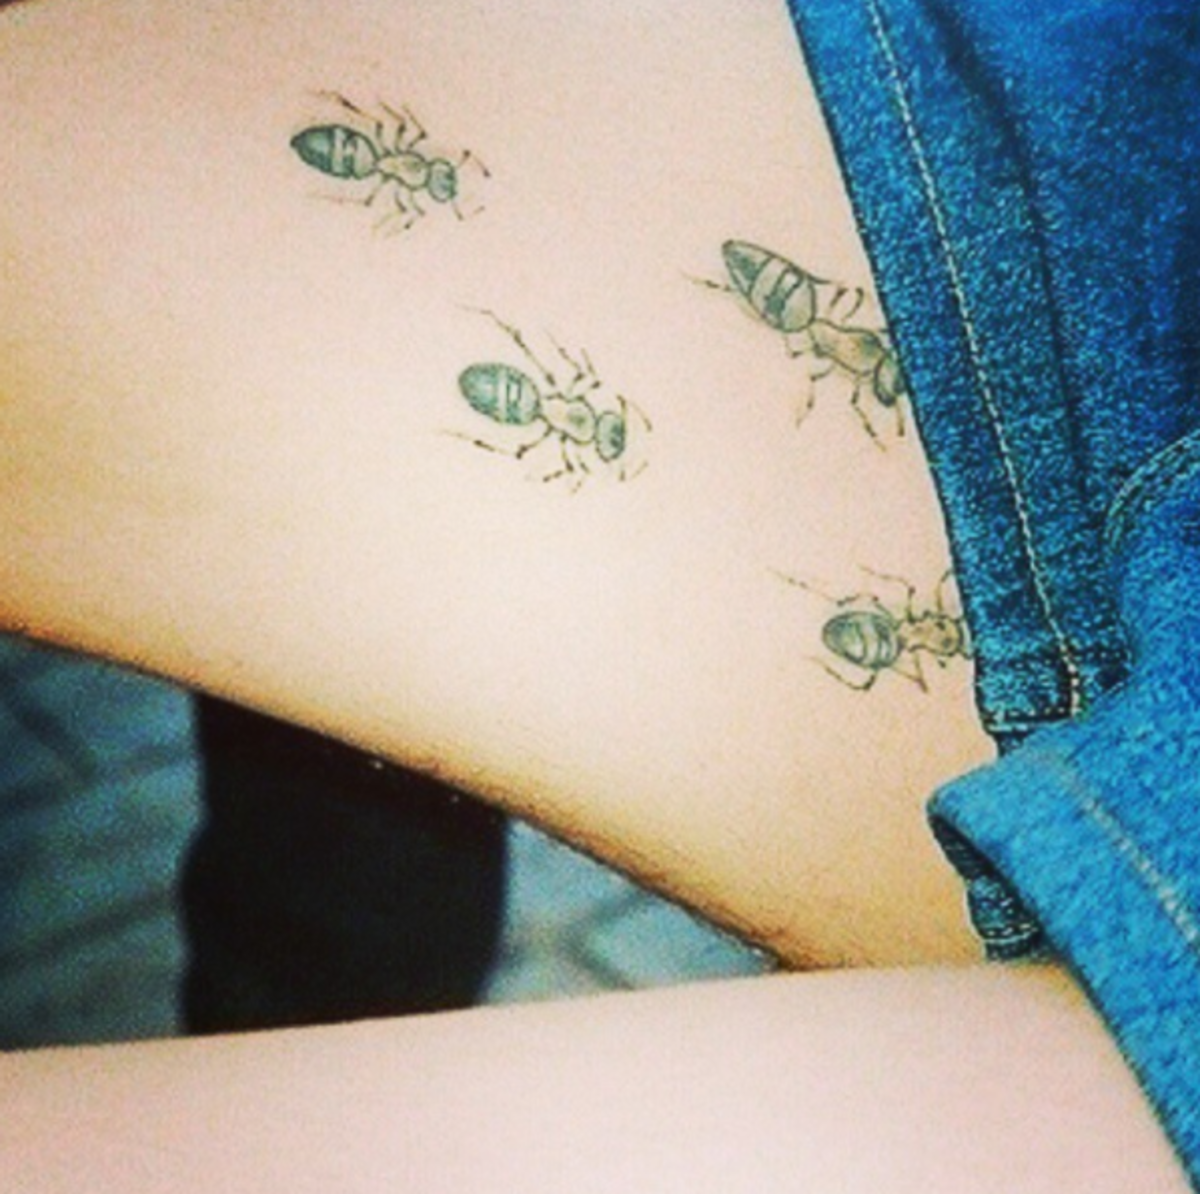 maur-tatoveringer på låret